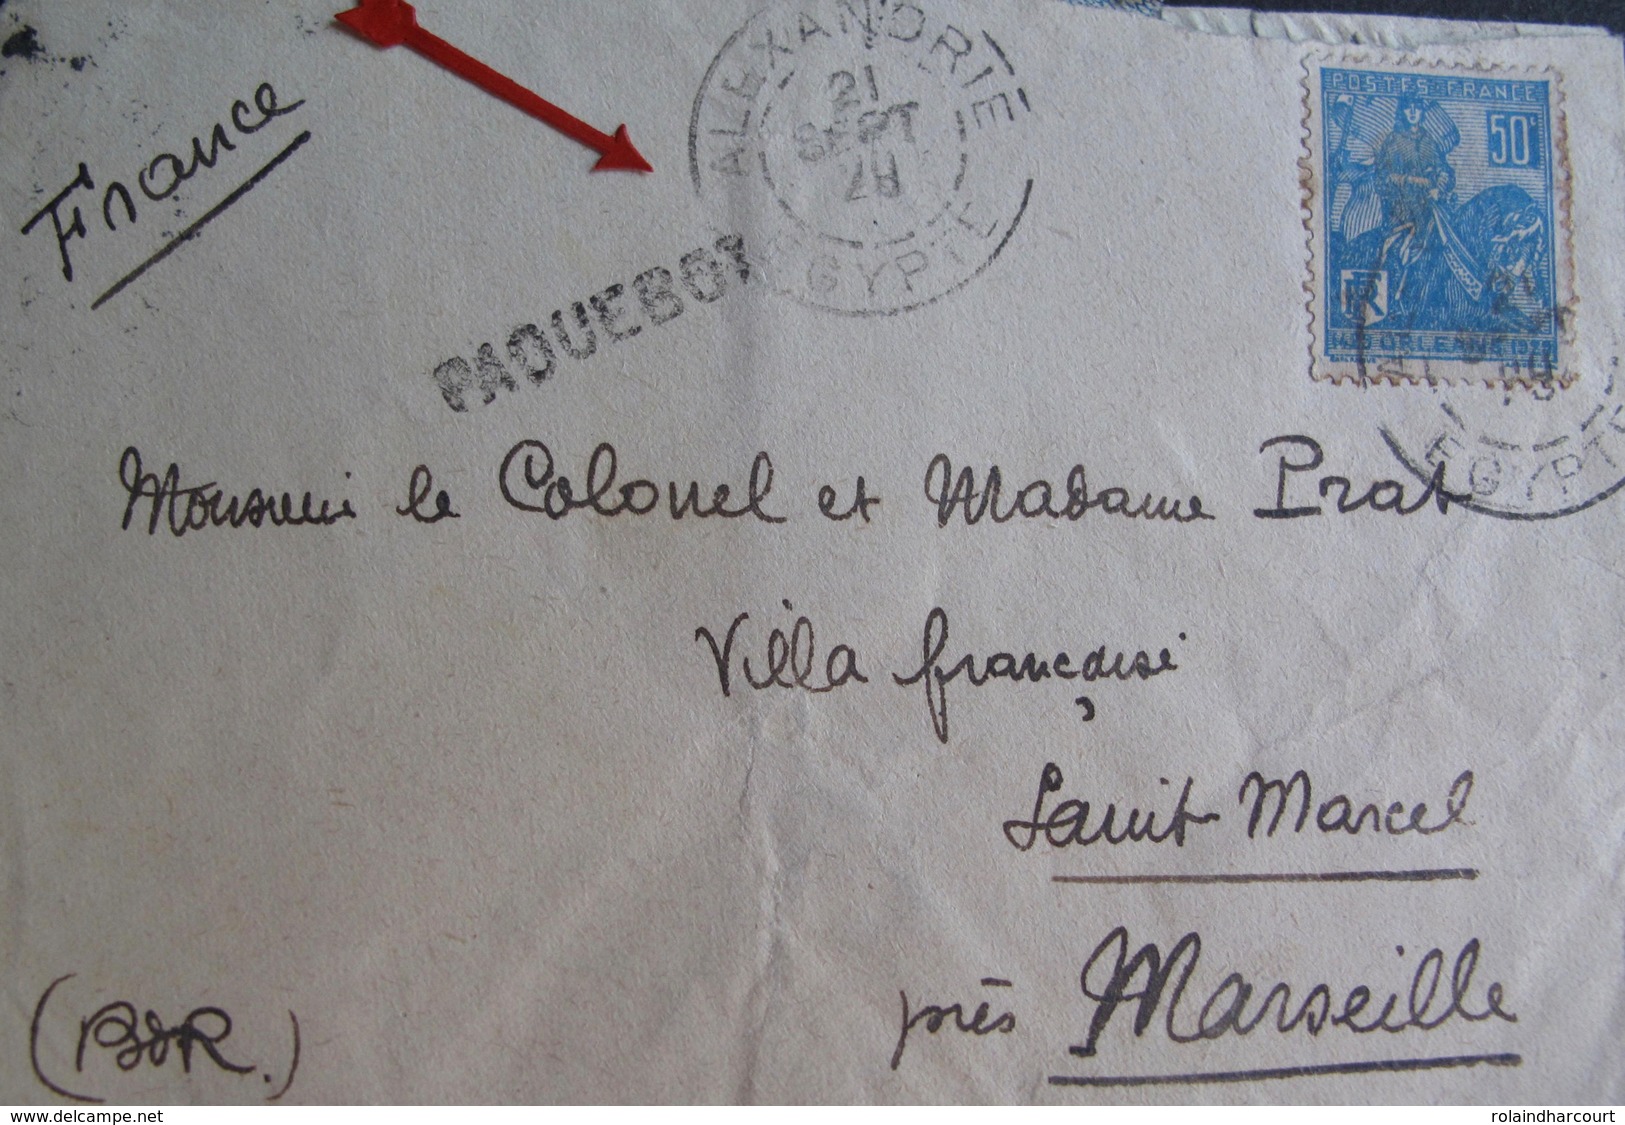 A106 - LETTRE - CàD : ALEXANDRIE (EGYPTE) 21 SEPT 1929. >>> MARSEILLE (FRANCE) - MARQUE LINEAIRE " PAQUEBOT " - Lettres & Documents